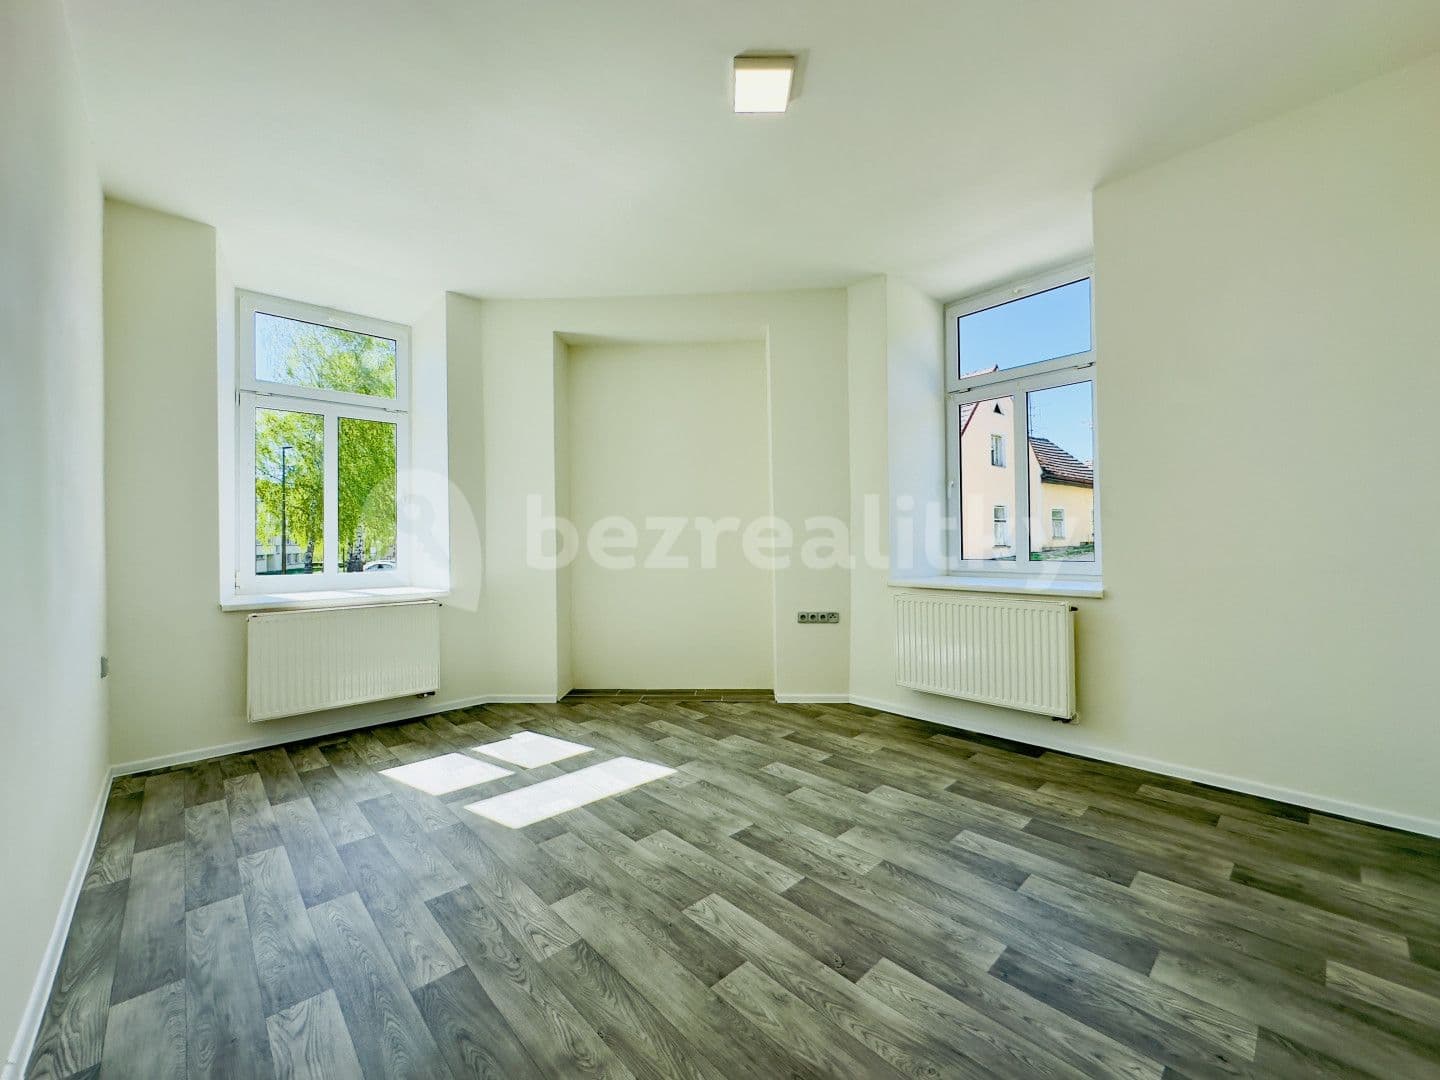 2 bedroom flat for sale, 59 m², Vídeňská, Nová Bystřice, Jihočeský Region